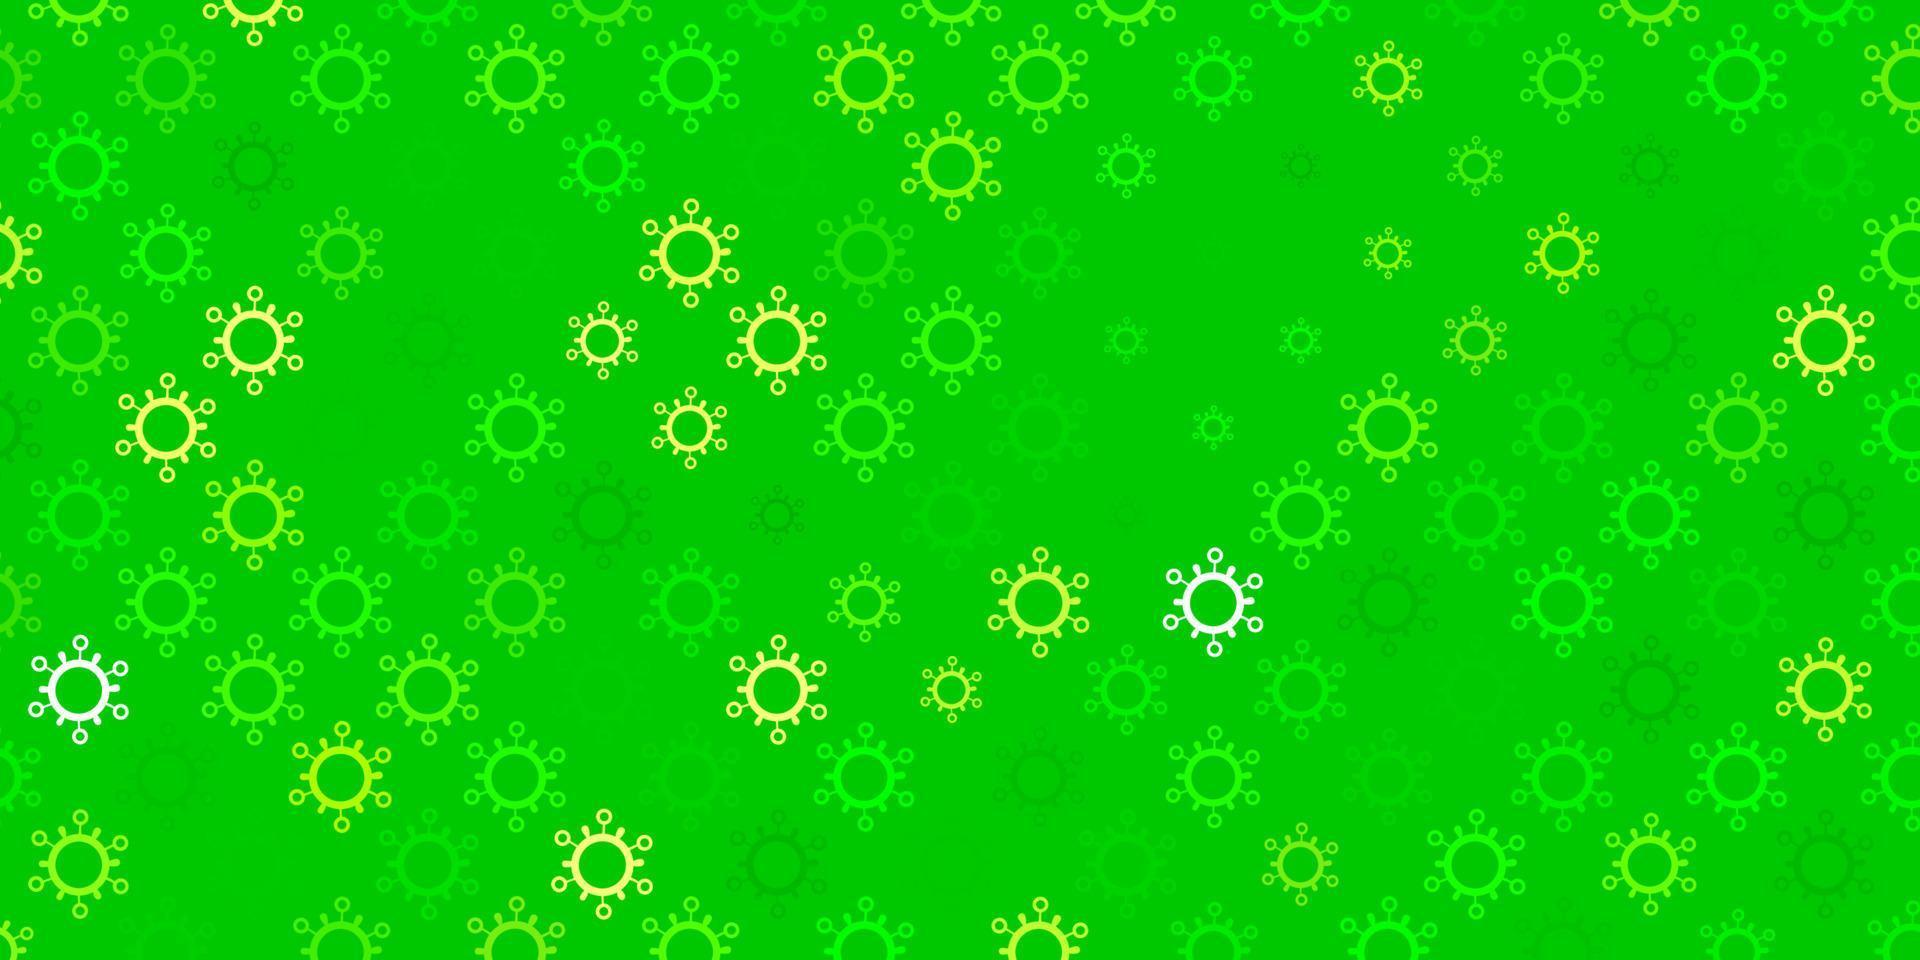 ljusgrön, gul vektorbakgrund med covid-19 symboler. vektor